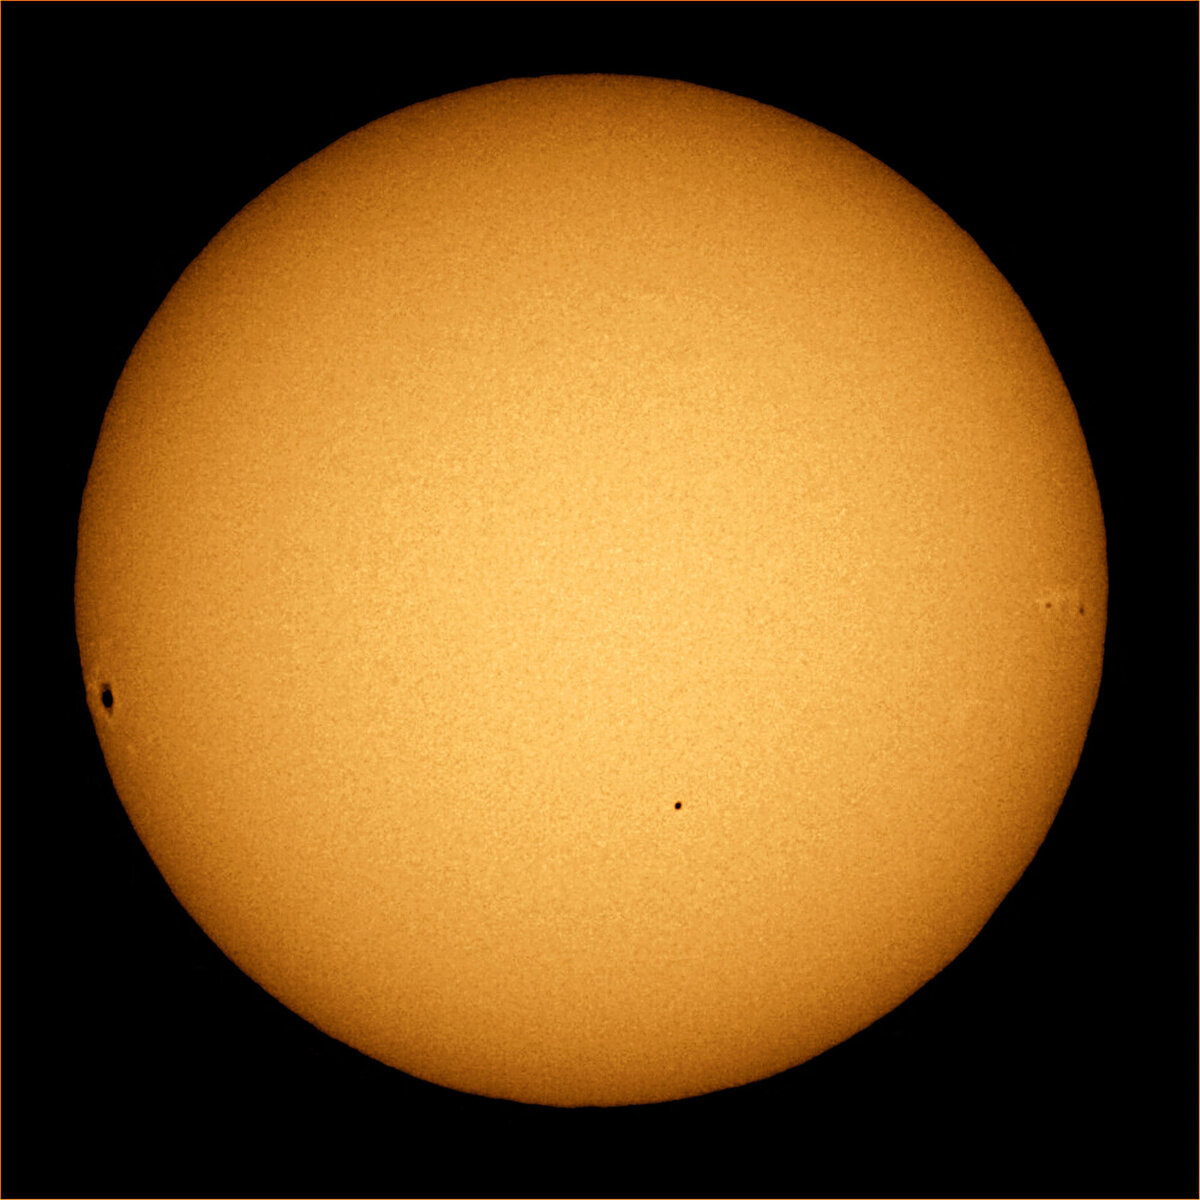 Транзит Меркурия по диску Солнца в 2006 году (планета внизу ближе к центру, справа и слева - солнечные пятна), фото wikimedia.org